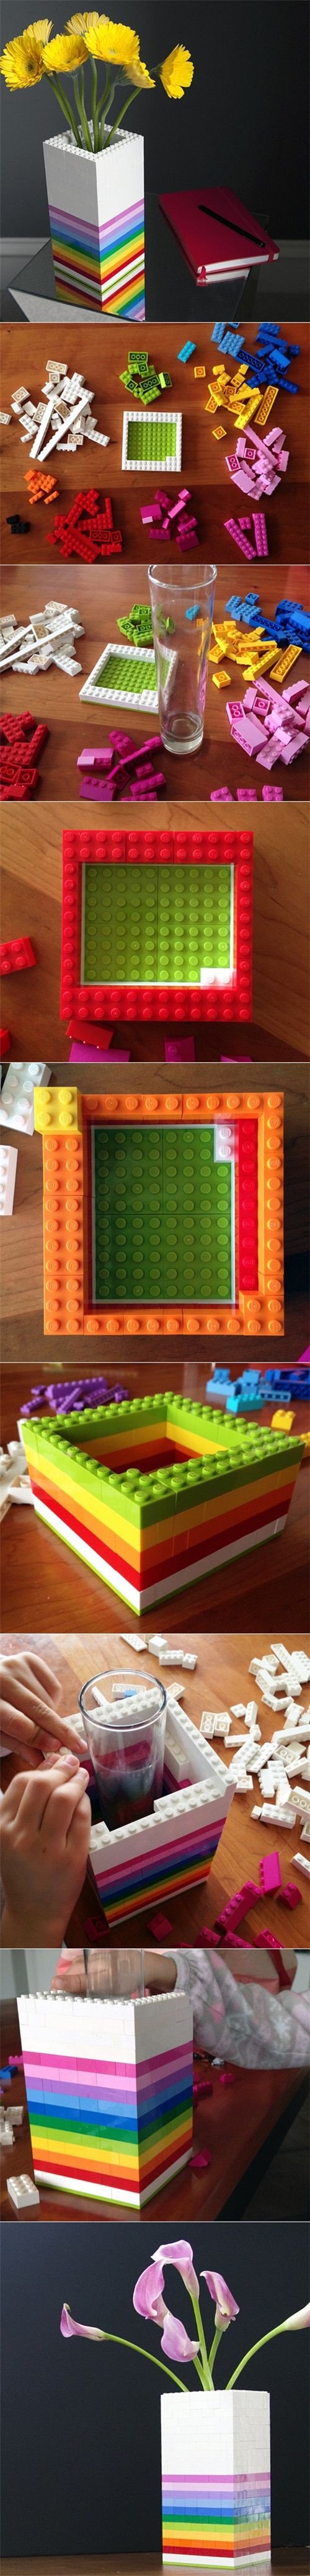 Lego10